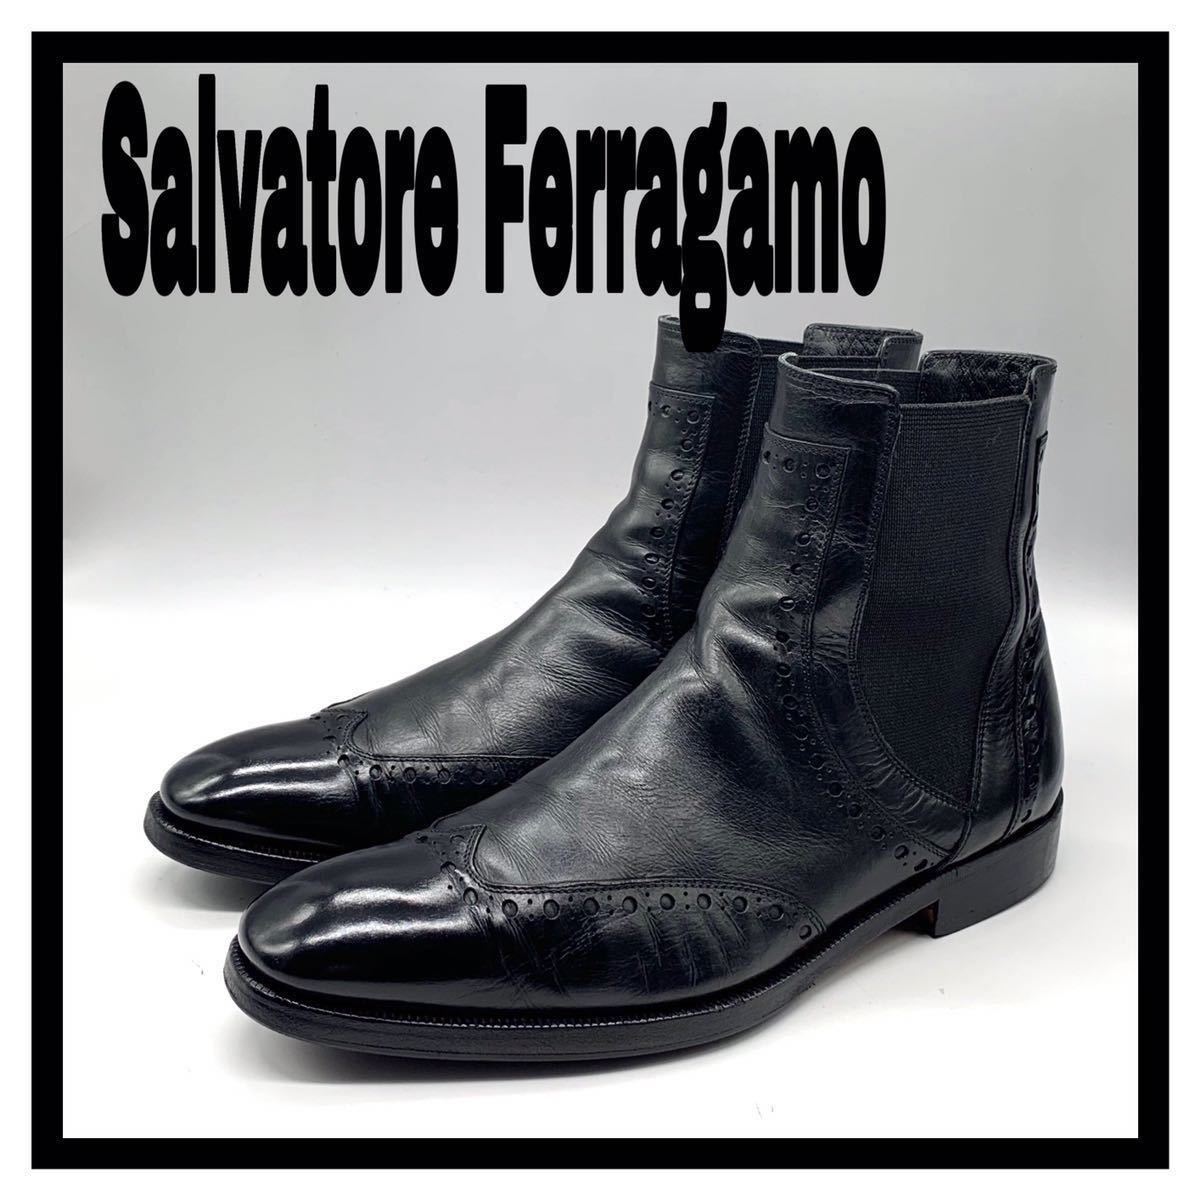 Salvatore Ferragamo (サルヴァトーレフェラガモ) サイドゴアブーツ チェルシーブーツ ウイングチップ レザー ブラック 黒 US7 25cm 革靴